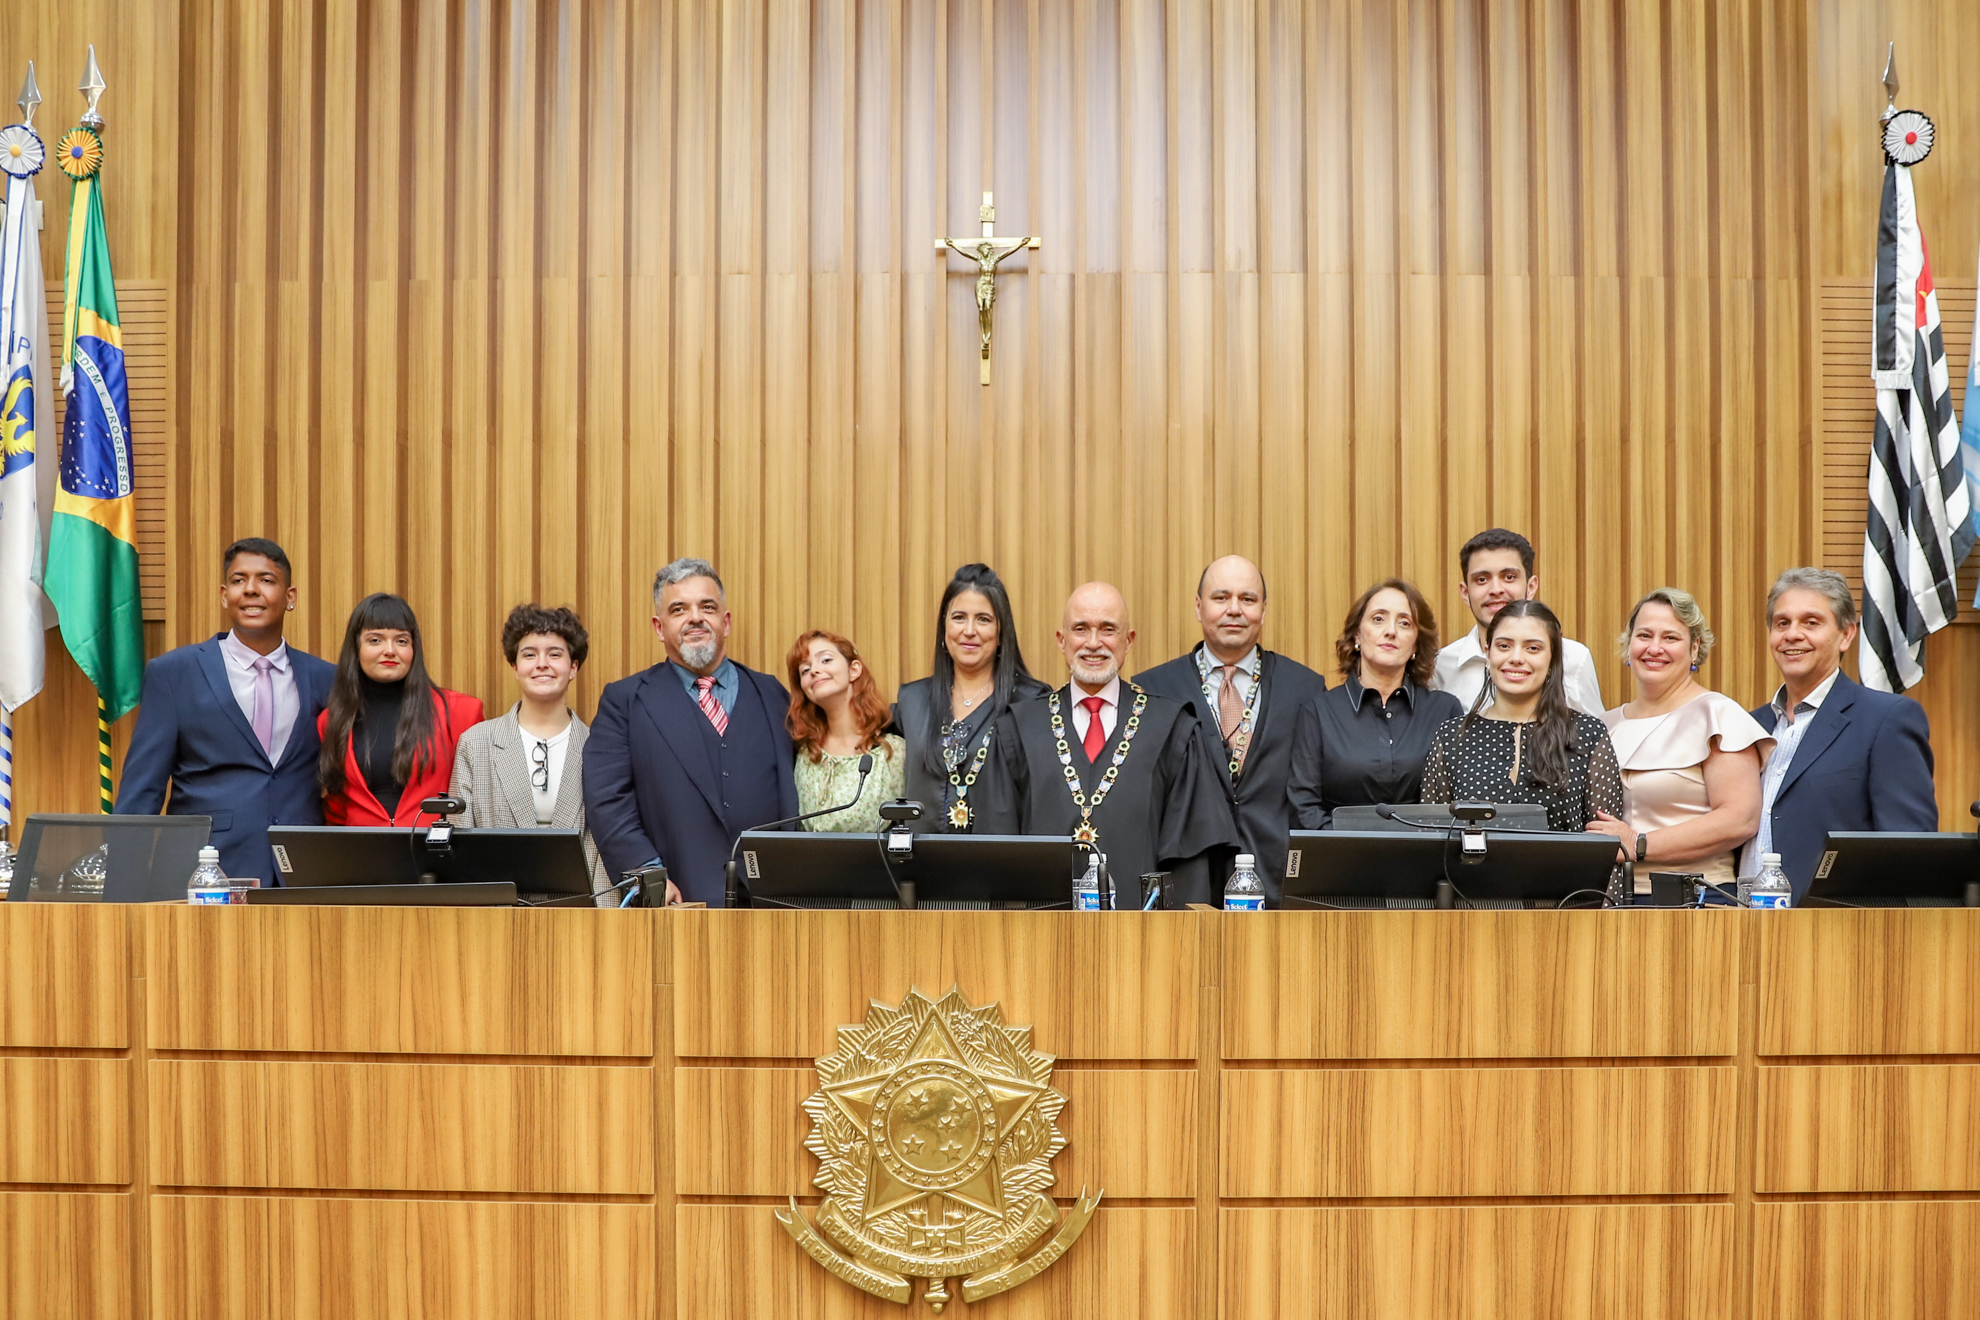 Dra. Ana e Dr. Marcelo com suas famílias e Dr. Samuel ao centro, na mesa alta do plenário revestido de madeira